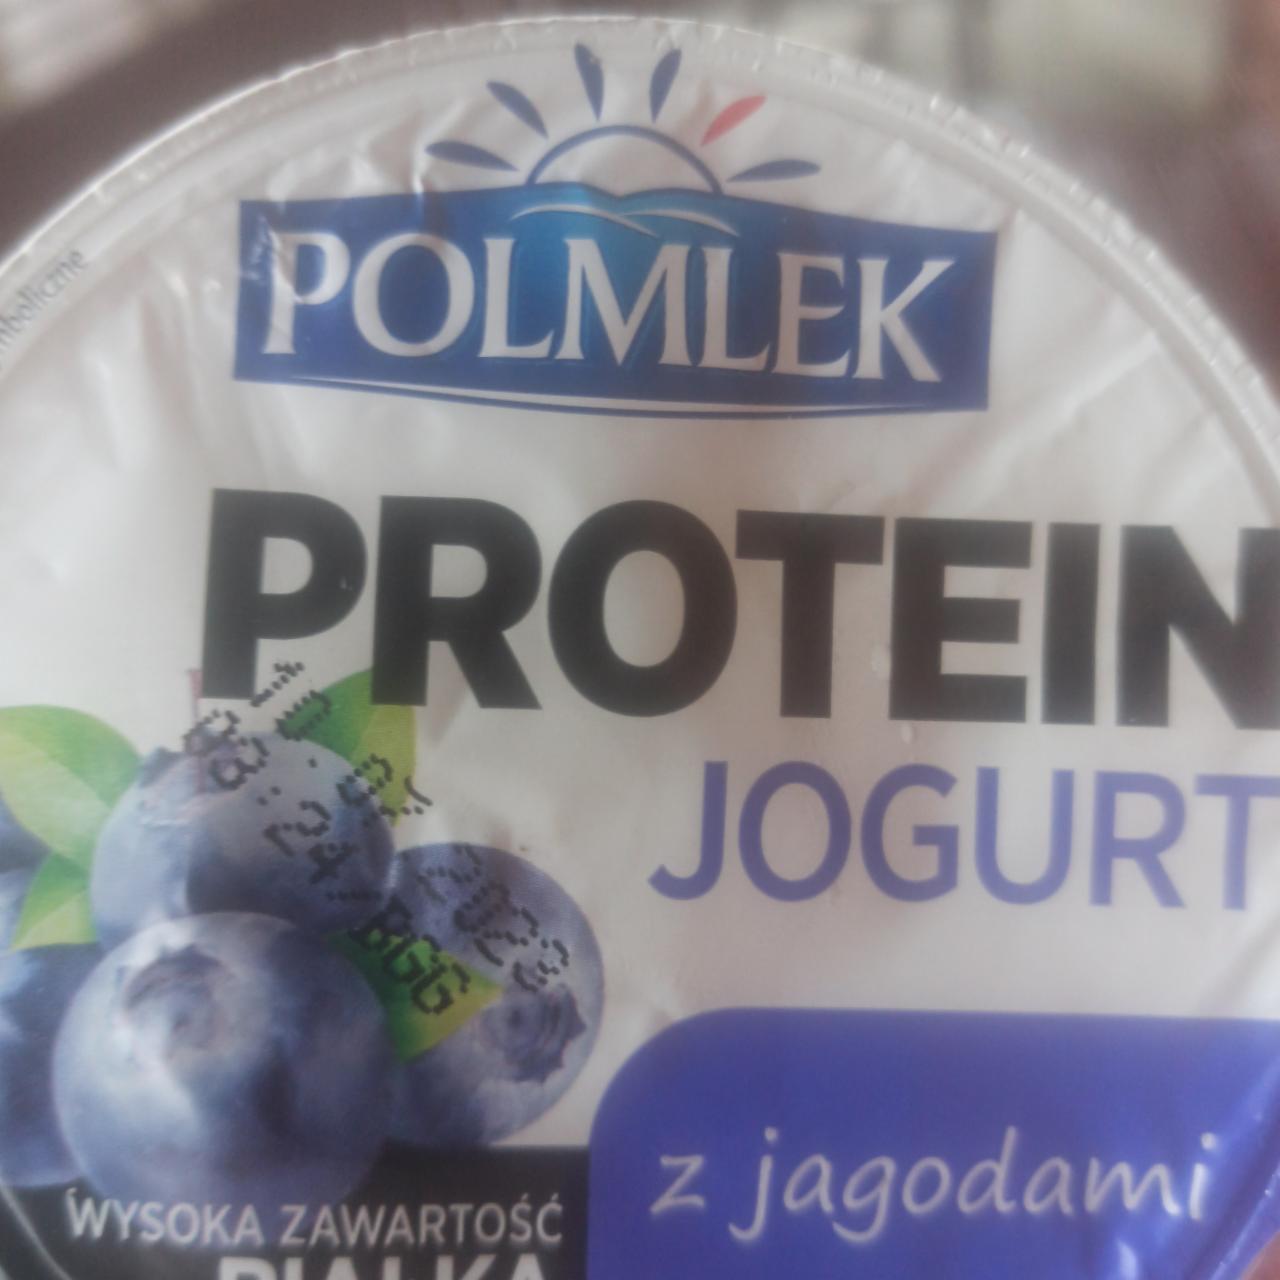 Fotografie - Protein jogurt z jagodami Polmlek